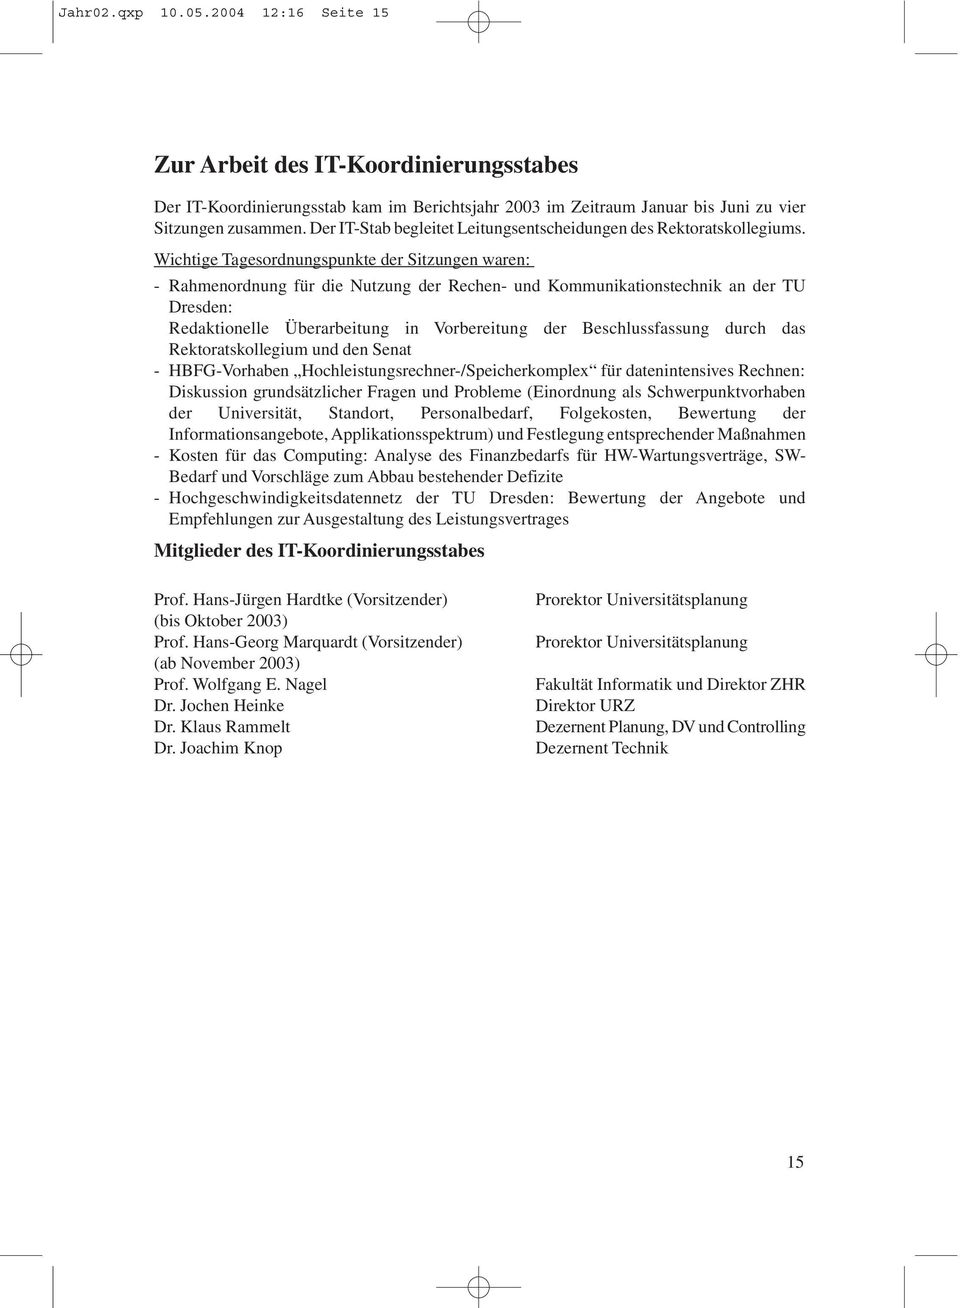 Wichtige Tagesordnungspunkte der Sitzungen waren: - Rahmenordnung für die Nutzung der Rechen- und Kommunikationstechnik an der TU Dresden: Redaktionelle Überarbeitung in Vorbereitung der